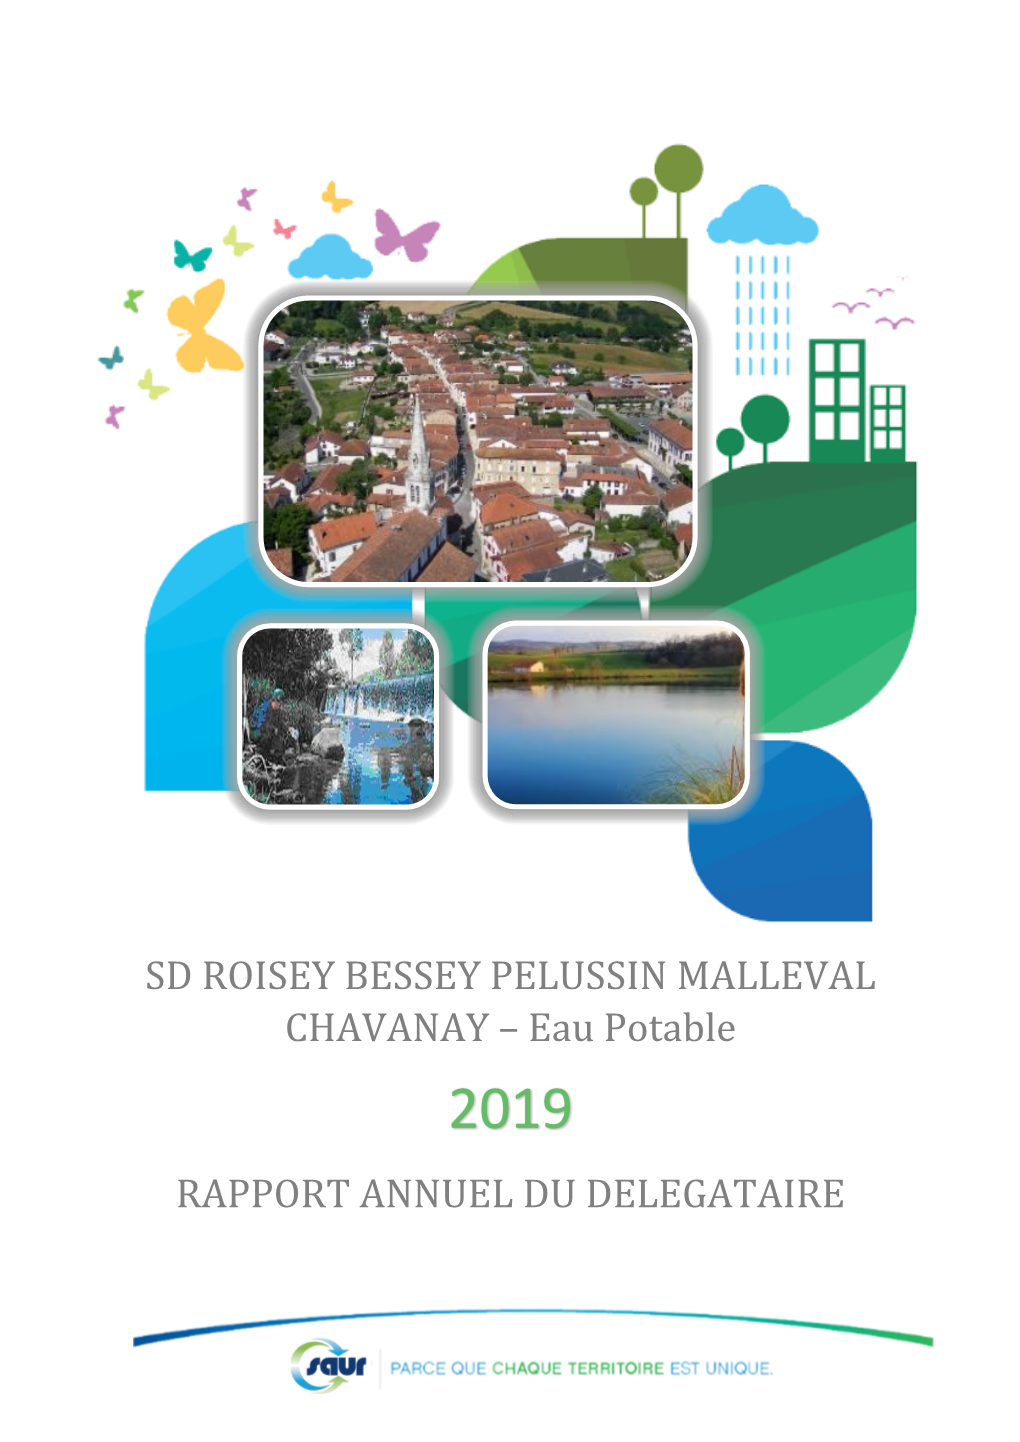 SD ROISEY BESSEY PELUSSIN MALLEVAL CHAVANAY – Eau Potable 2019 RAPPORT ANNUEL DU DELEGATAIRE Table Des Matières EDITORIAL